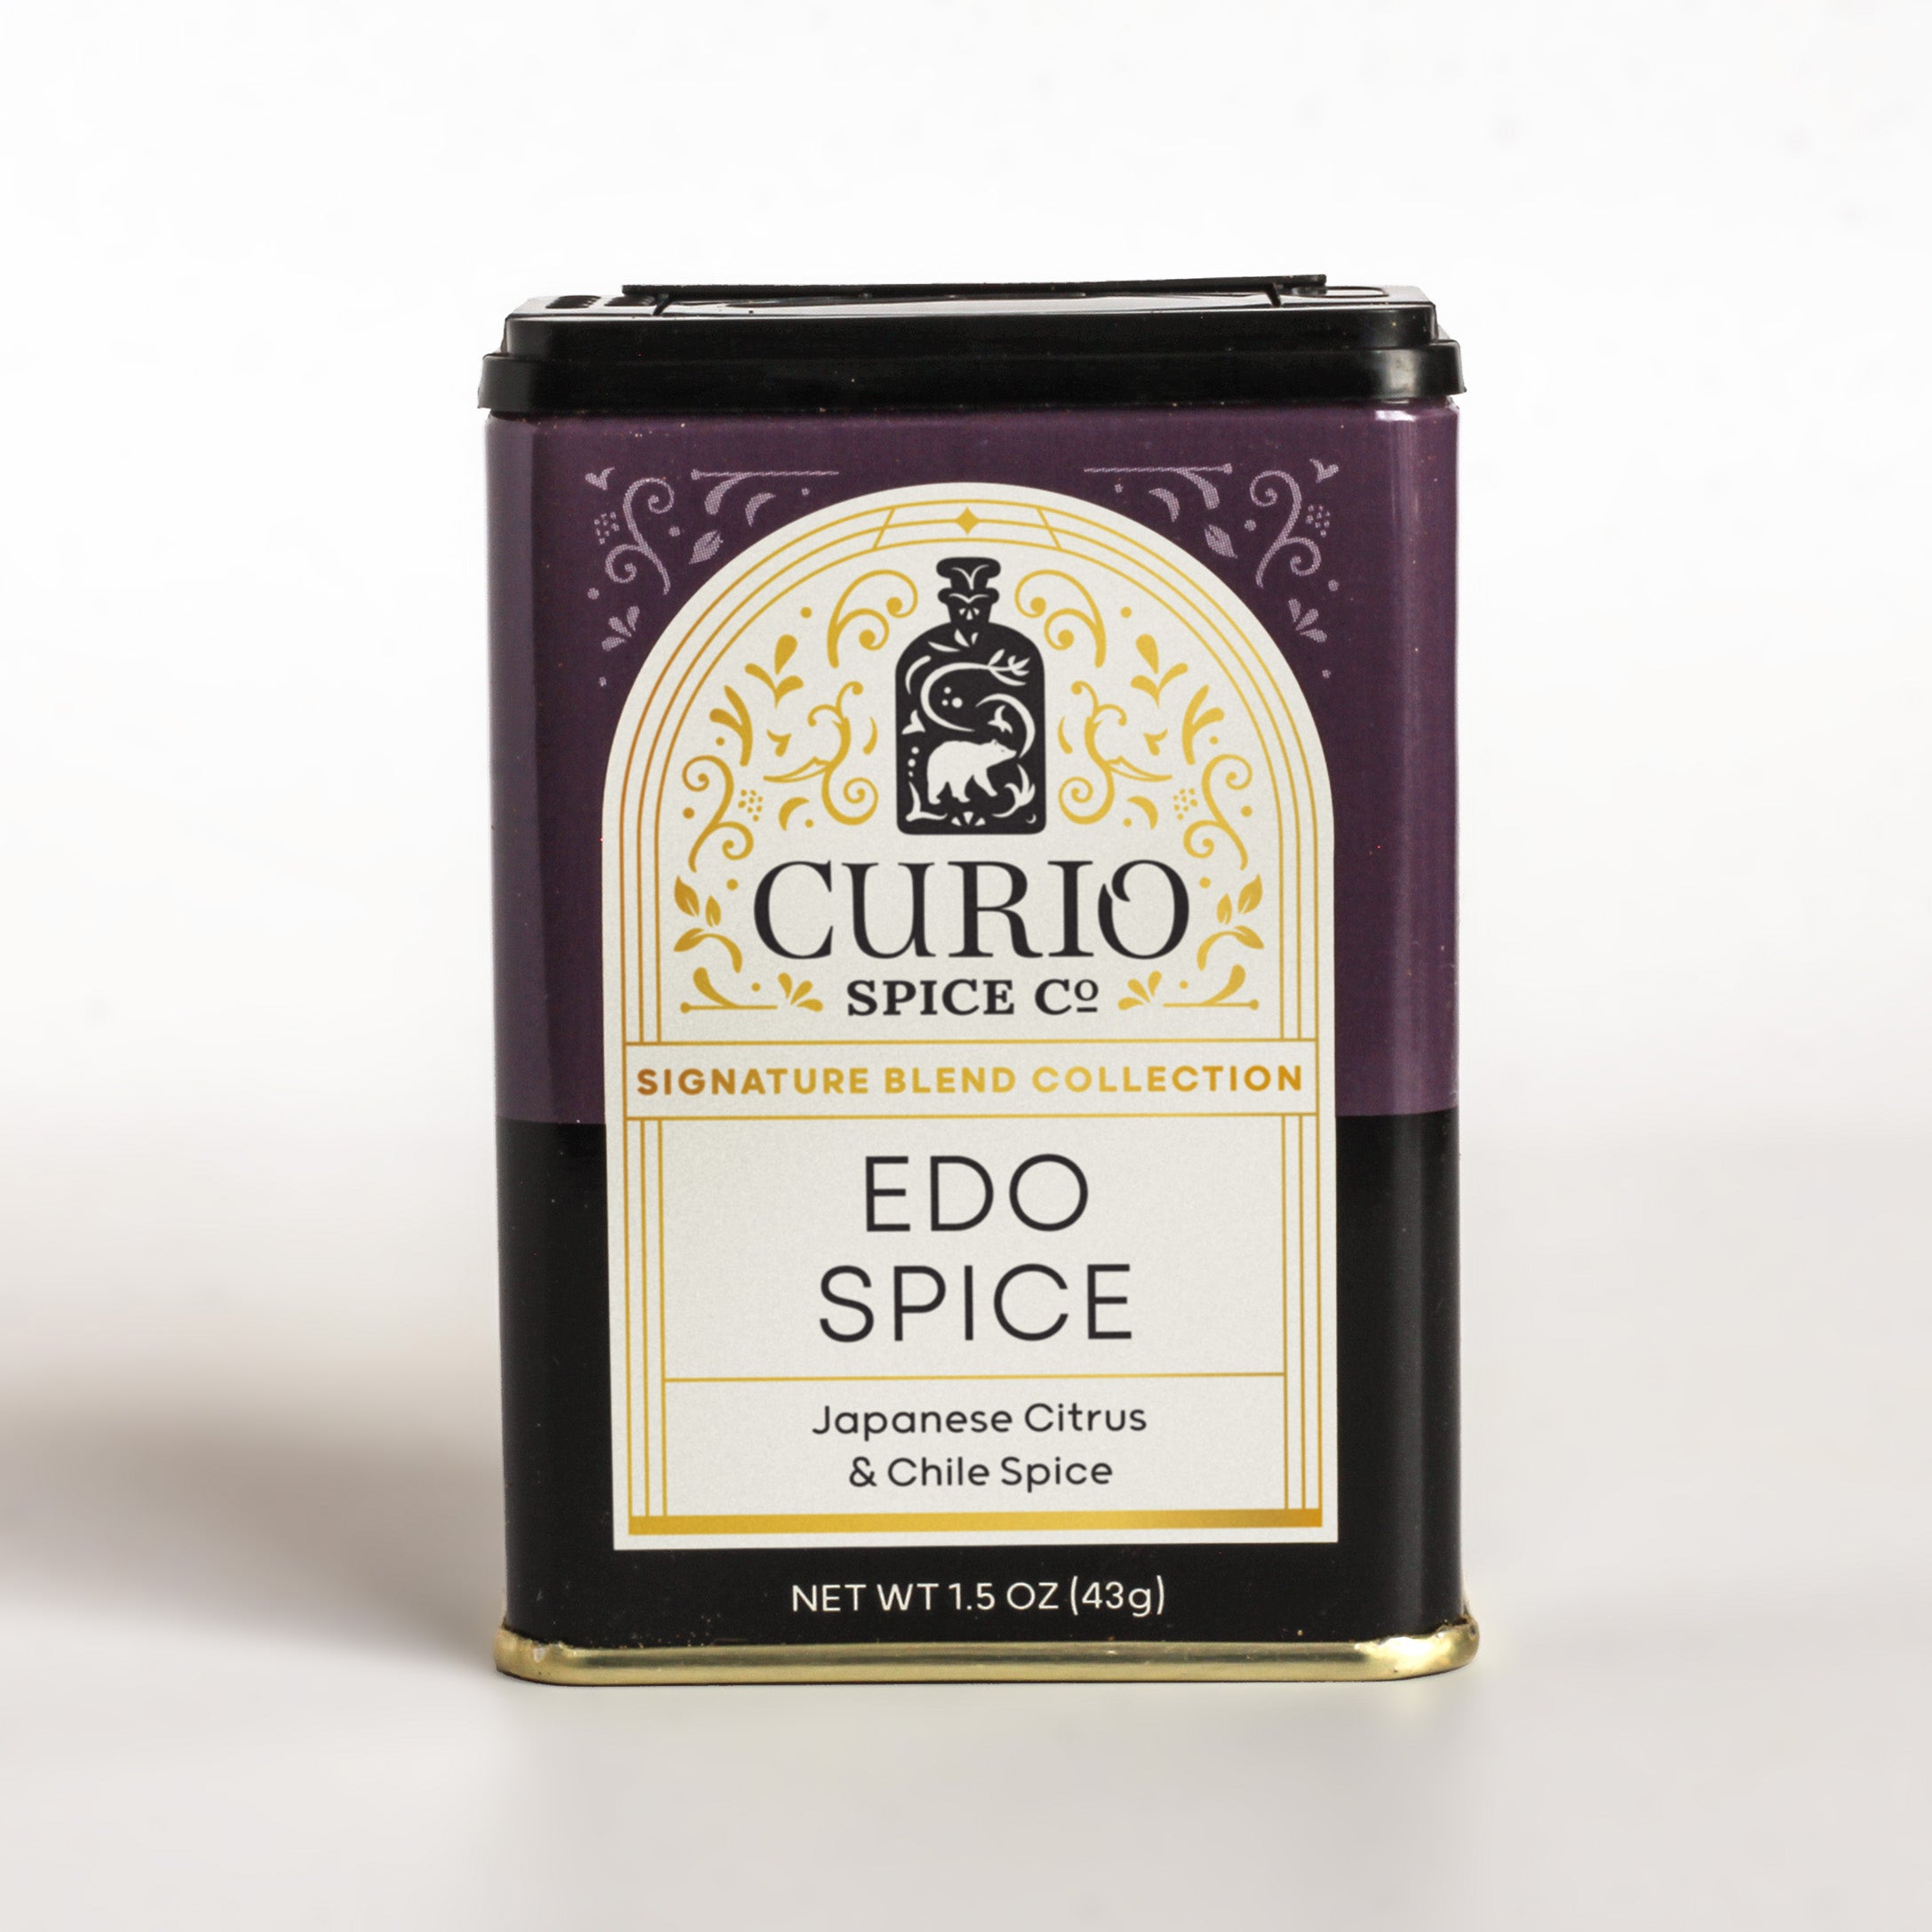 Curio Spice Co Edo Spice